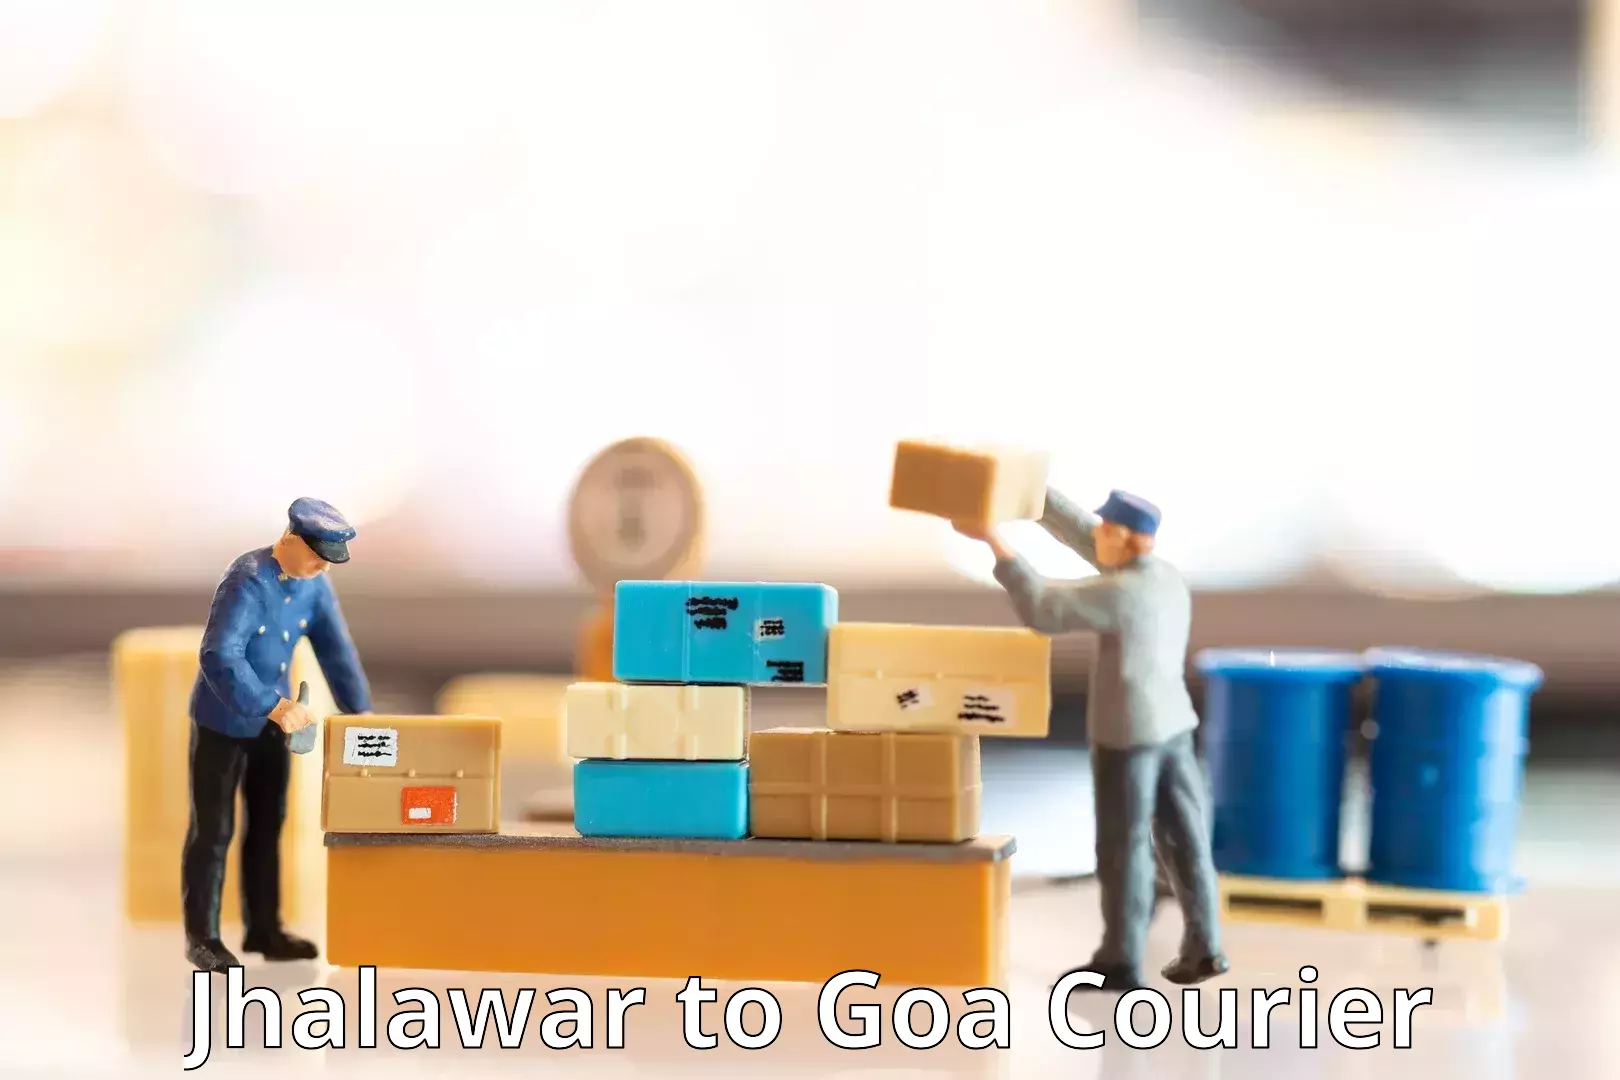 Courier service partnerships Jhalawar to Panjim